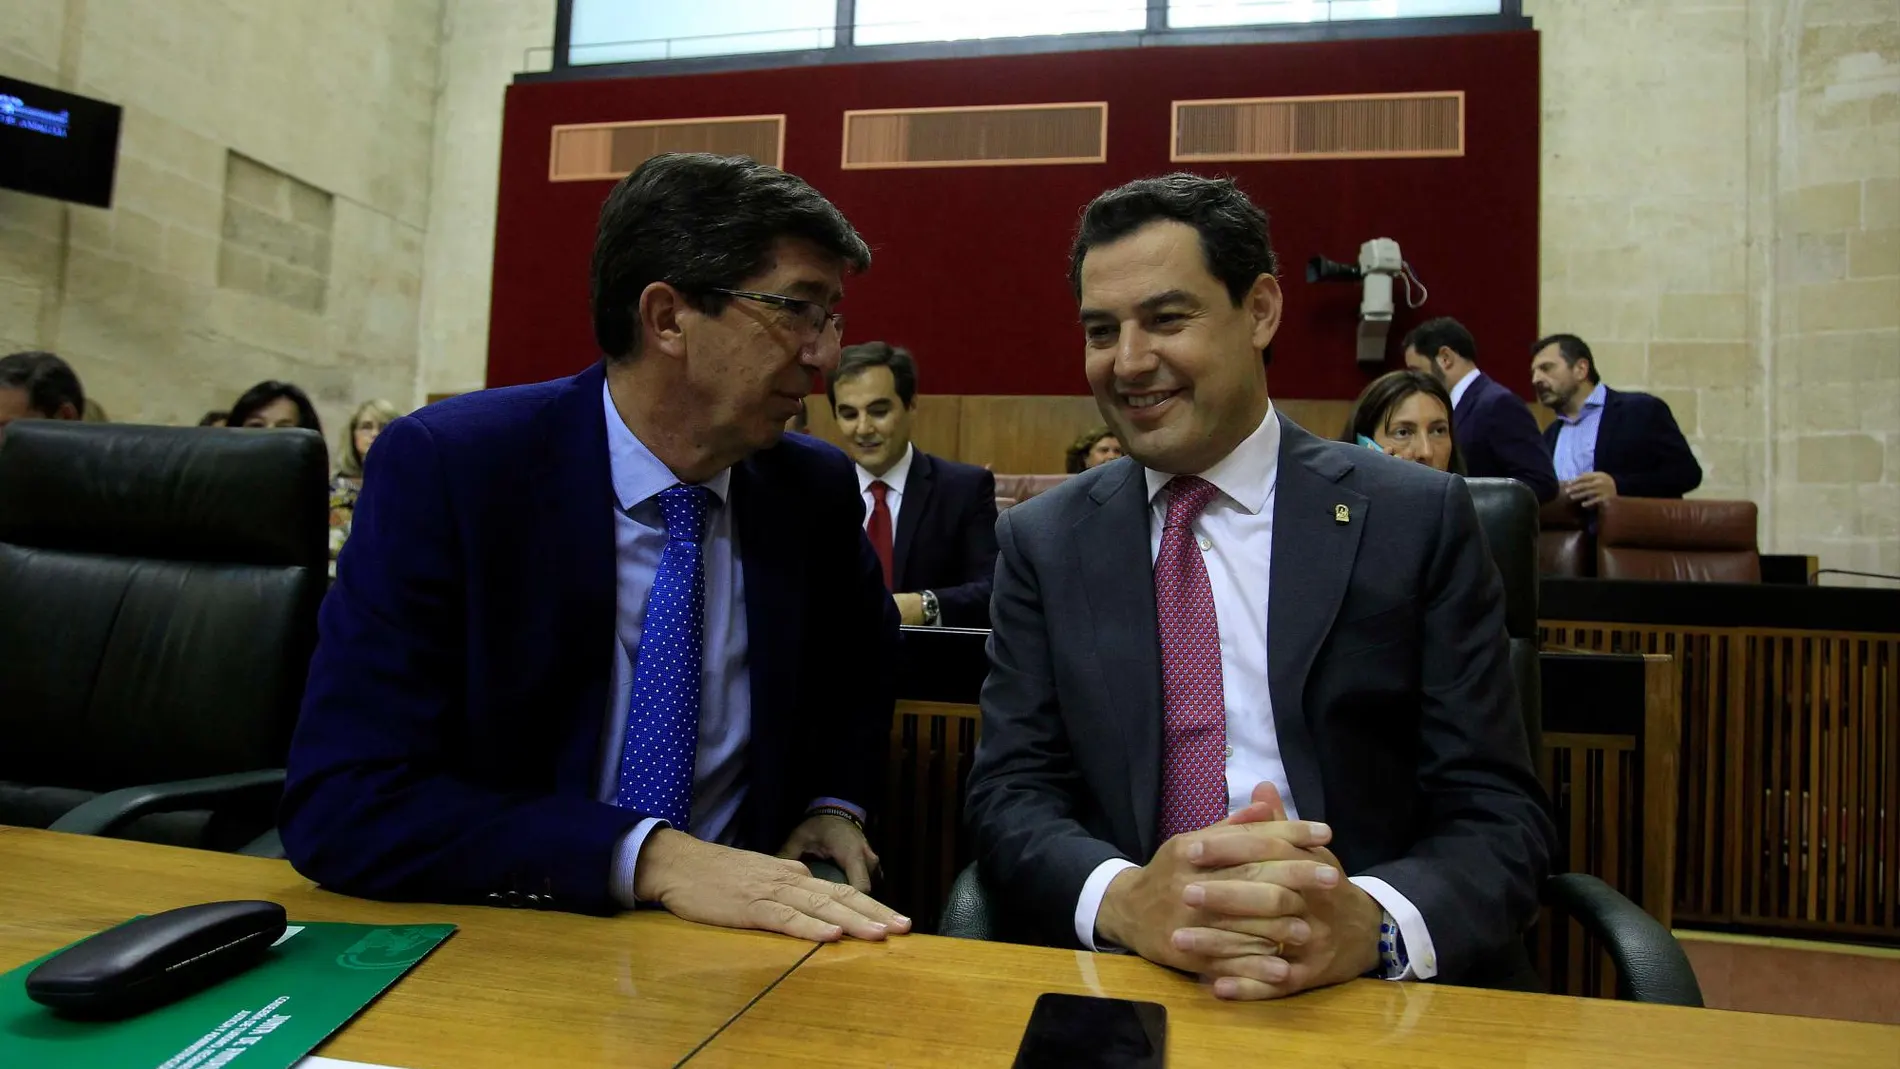 Según los datos aportados sobre la estimación de voto, la alianza entre PP-A y Cs obtendría el 42,56% de los sufragios mientras el PSOE-A se quedaría con un 30,52% / Foto: Manuel Olmedo